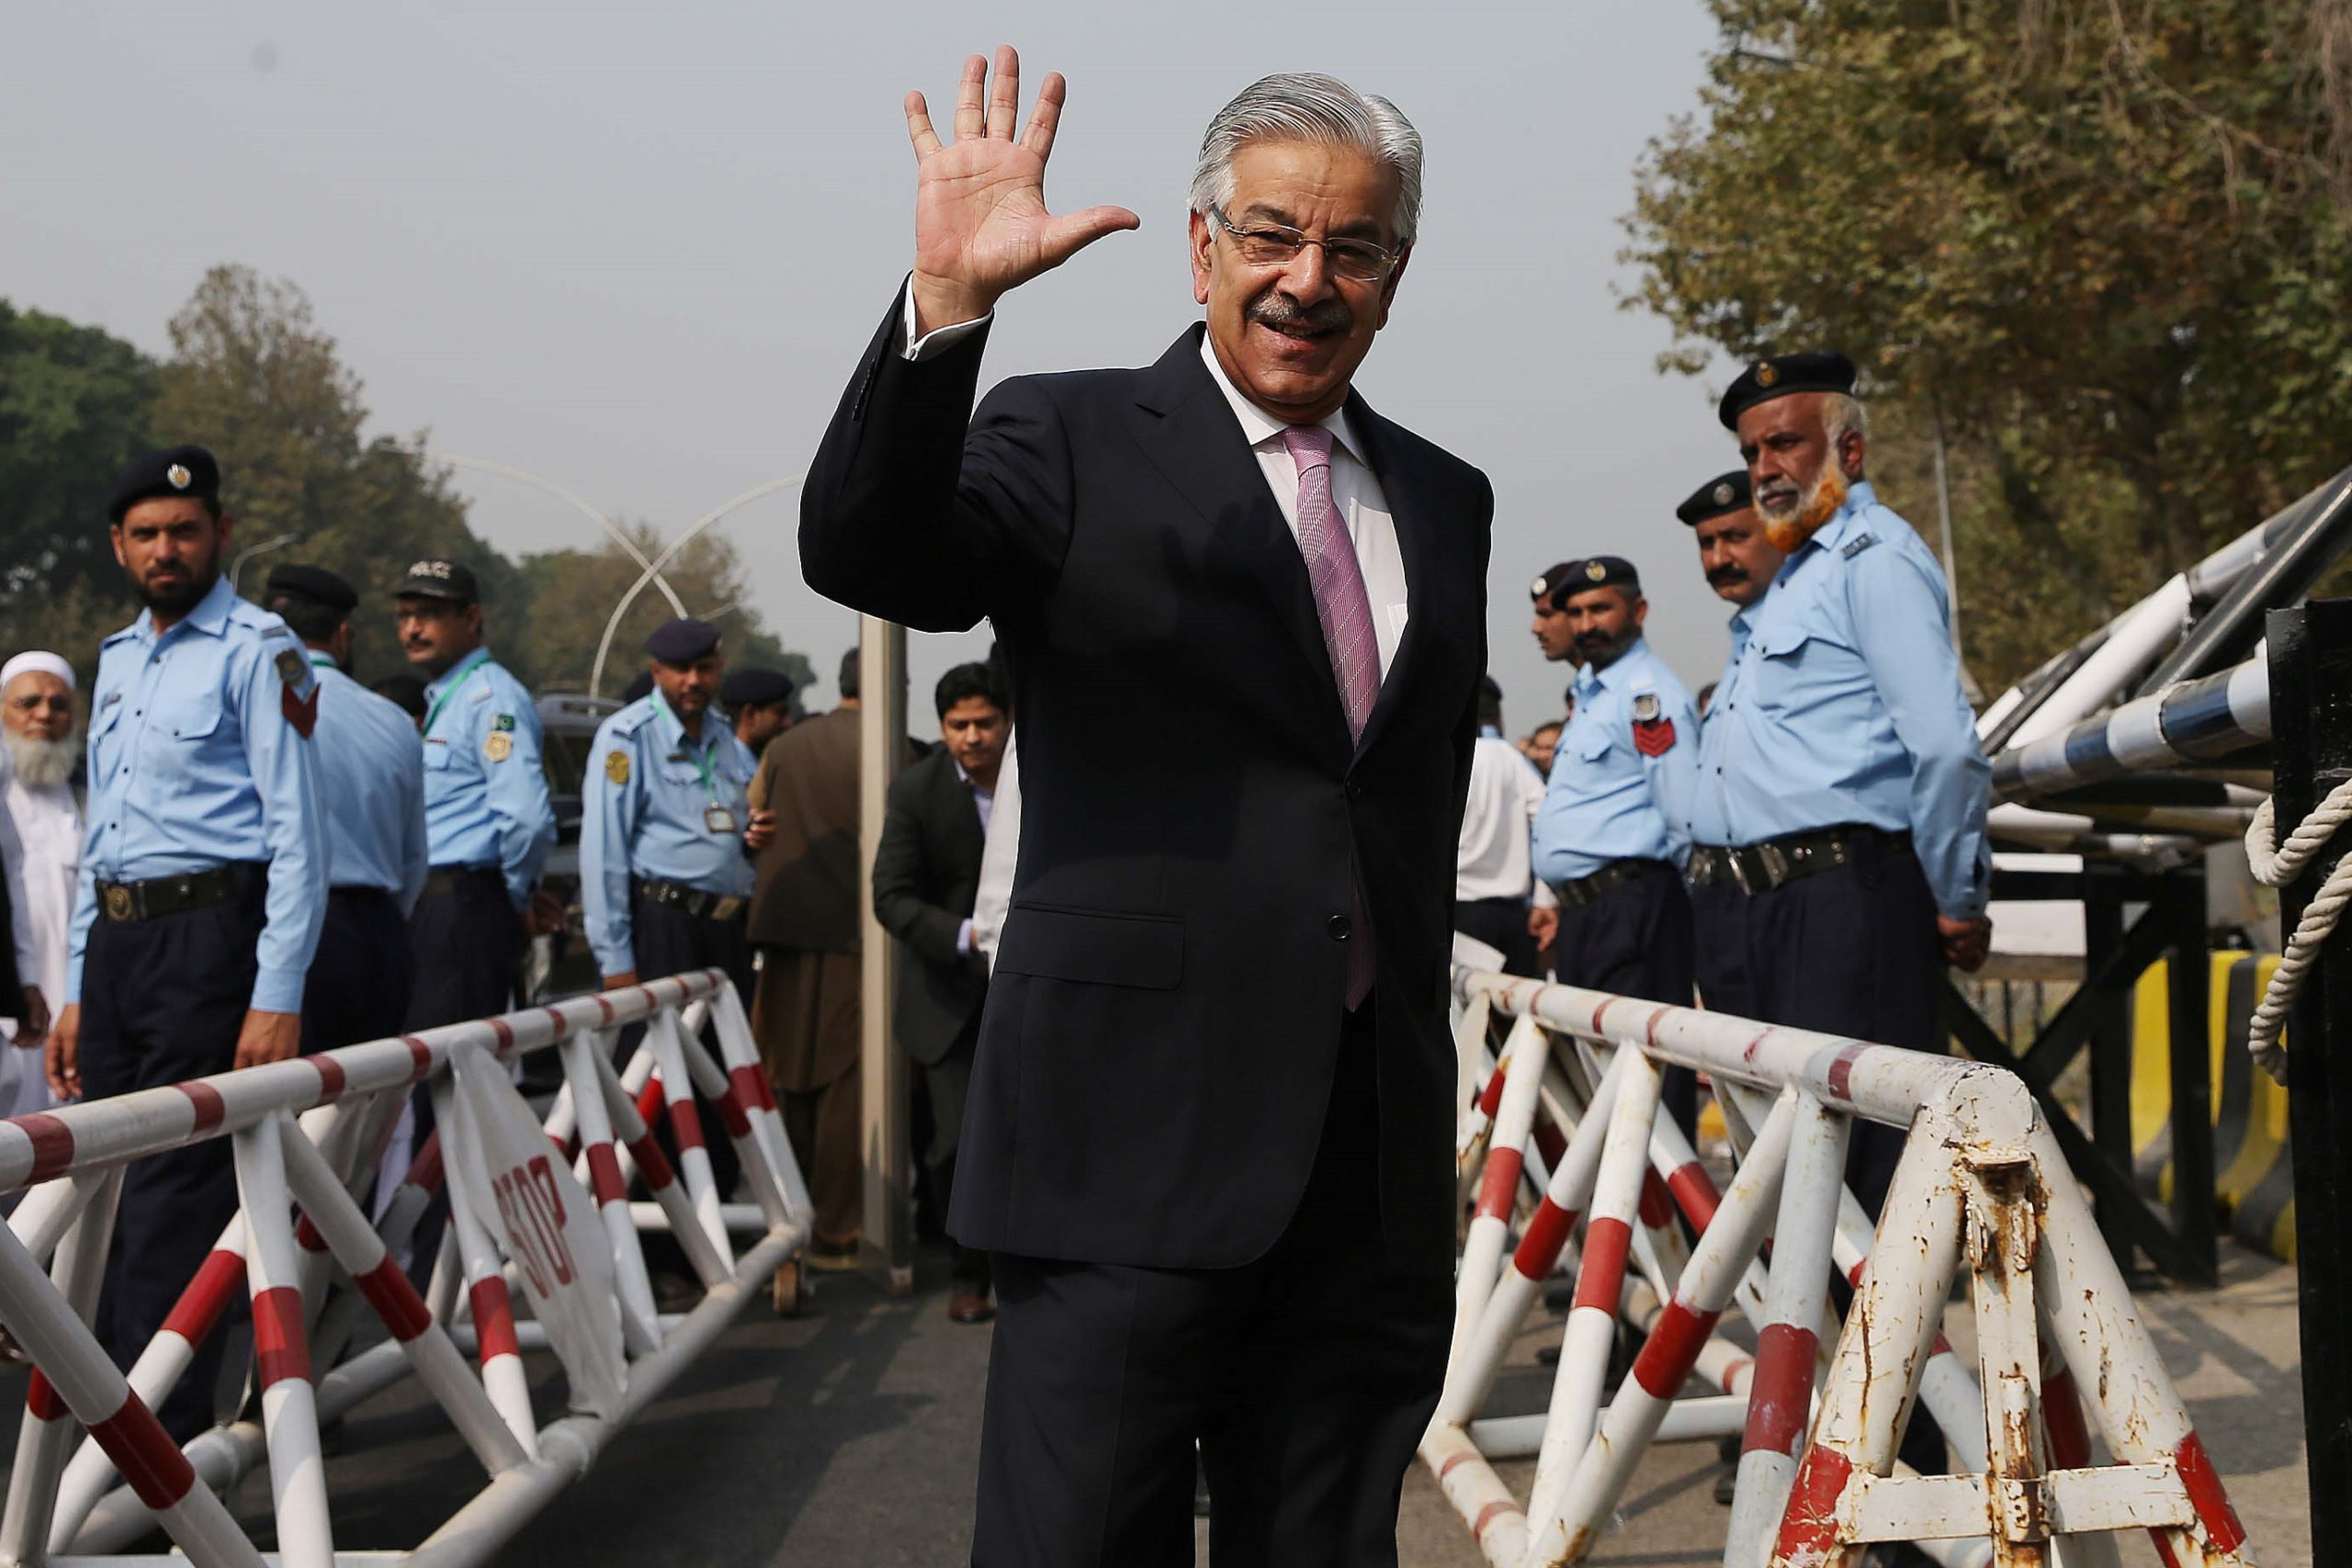 Négy év emigráció után visszatért Pakisztánba a volt miniszterelnök